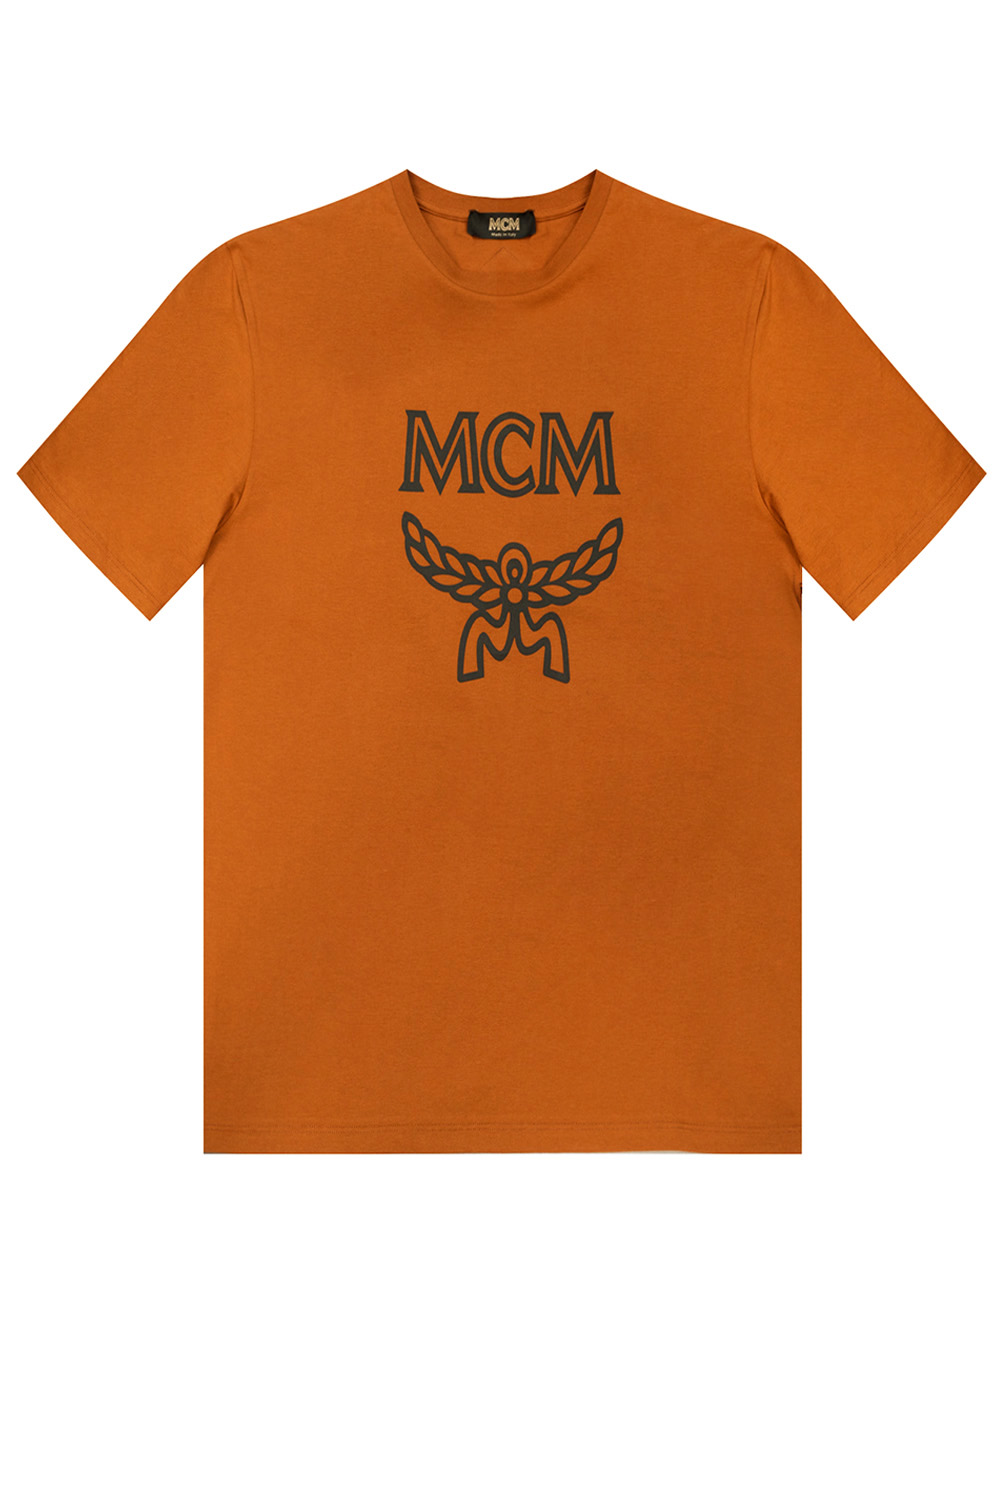 Buy > t shirt mcm > in stock